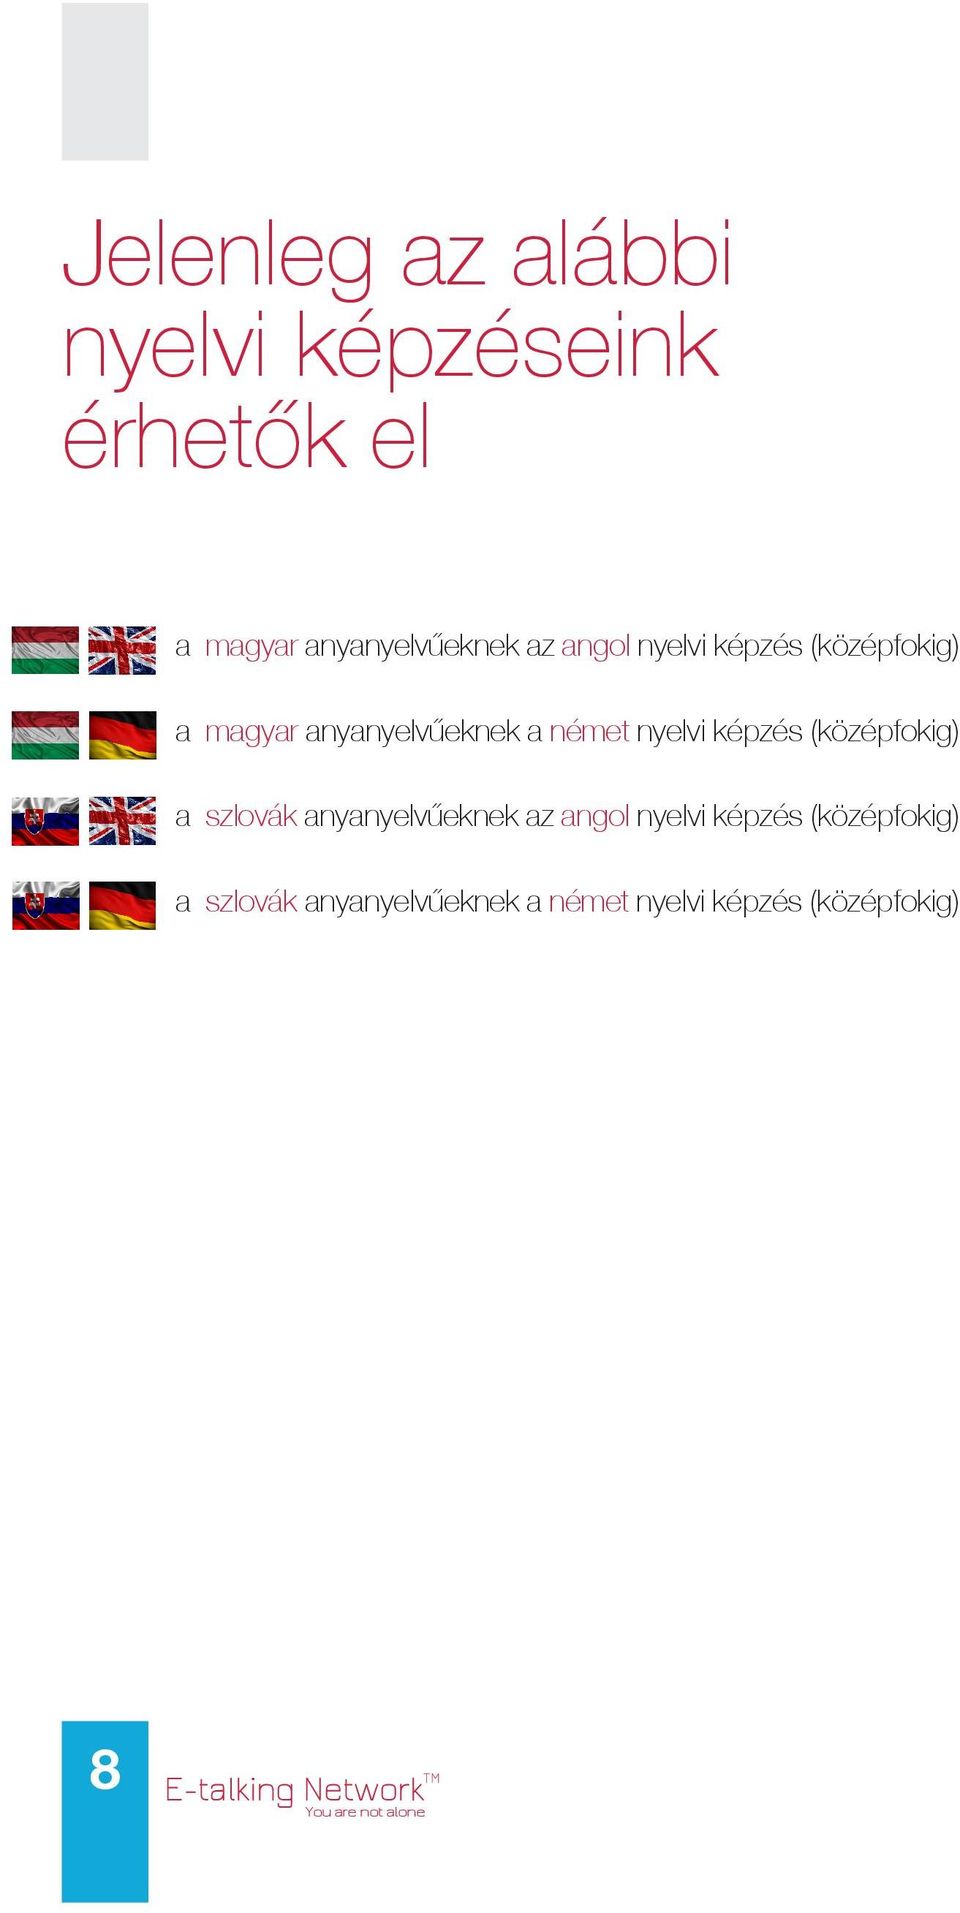 (középfokig) a szlovák anyanyelvűeknek az angol nyelvi képzés (középfokig) a